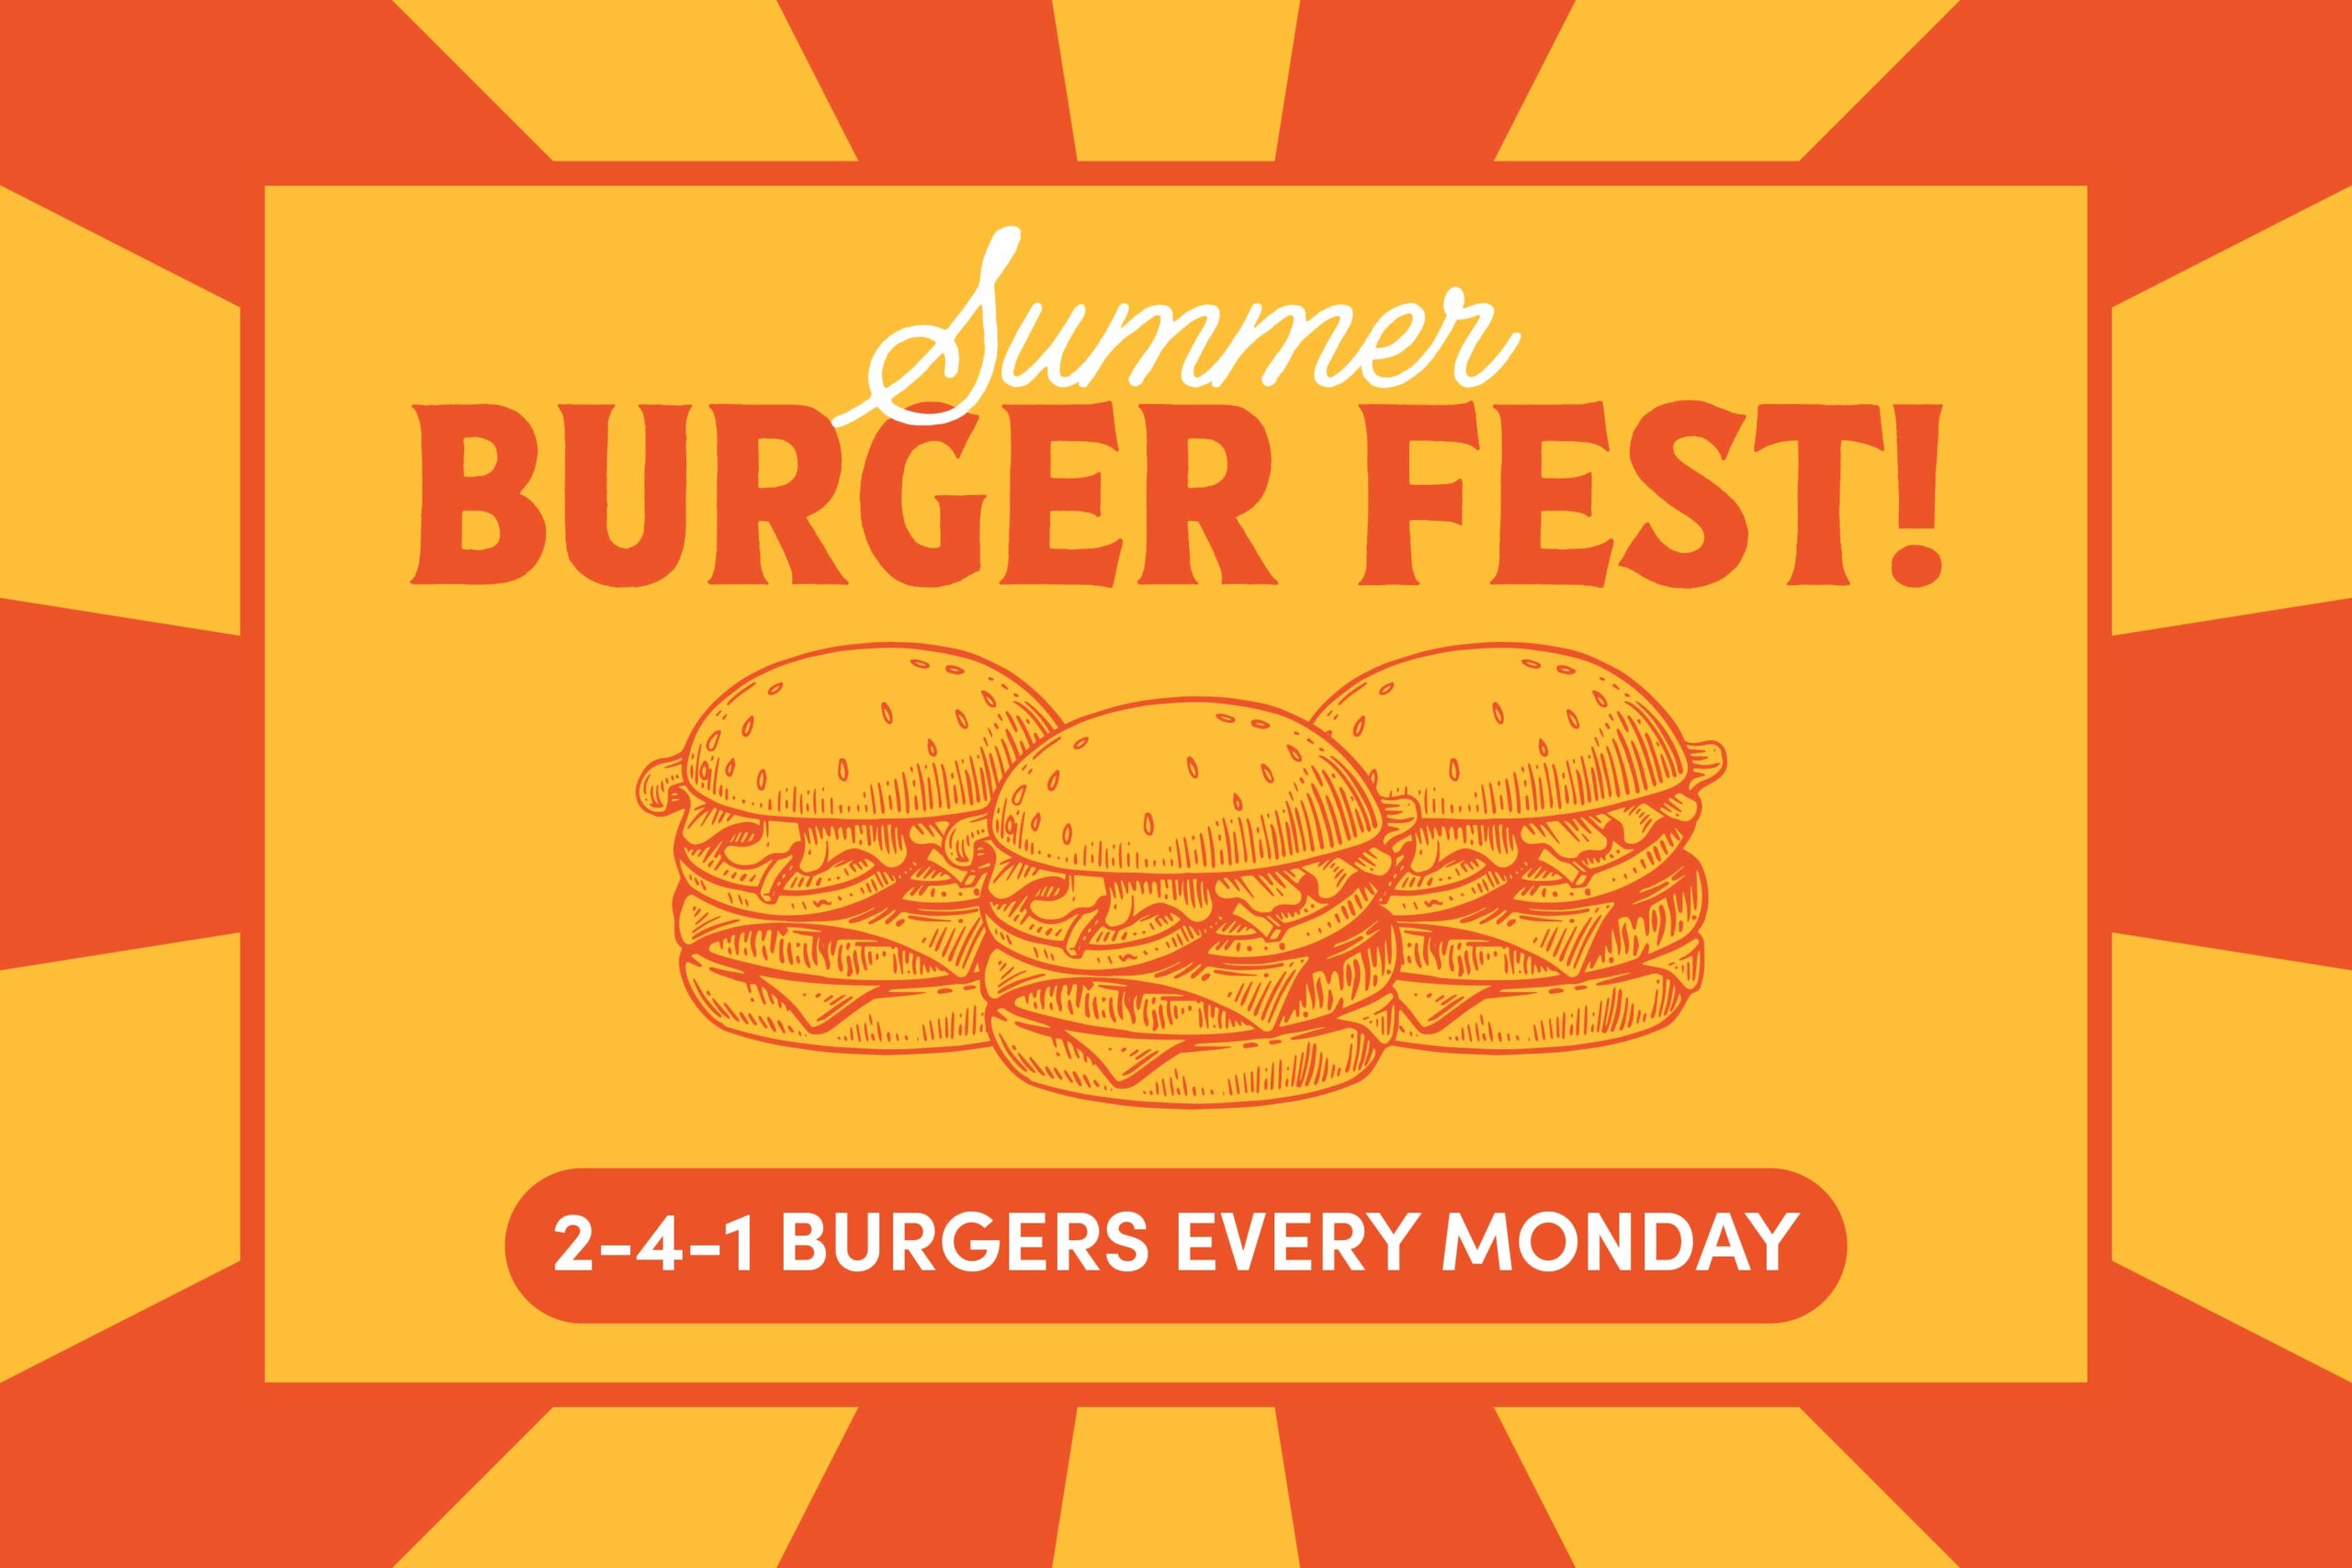 Summer Burger Fest Deal 2 for 1 on Mondays